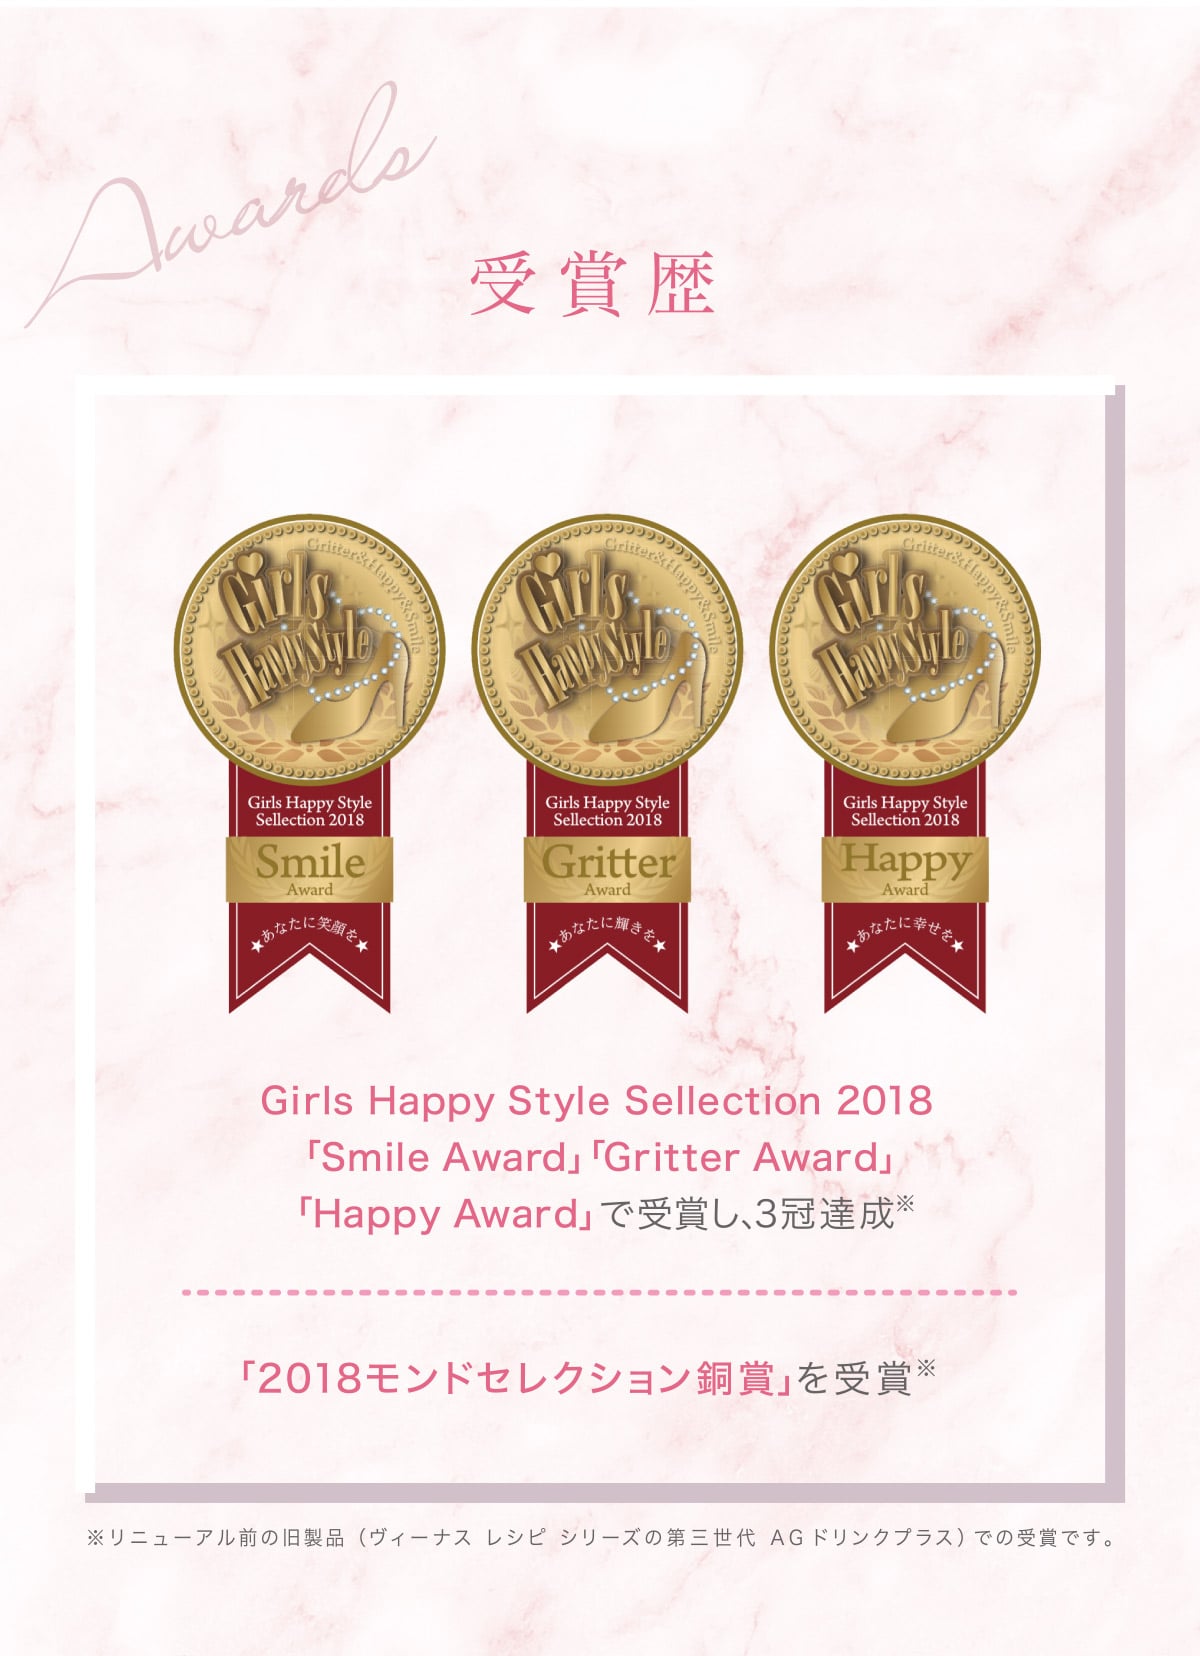 【受賞歴】Girls Happy Style Sellection 2018「Smile Award」「Gritter Award」「Happy Award」で受賞し、3冠達成※　「2018モンドセレクション銅賞」を受賞※　※リニューアル前の旧製品(ヴィーナスレシピシリーズの第三世代AGドリンクプラス)での受賞です。